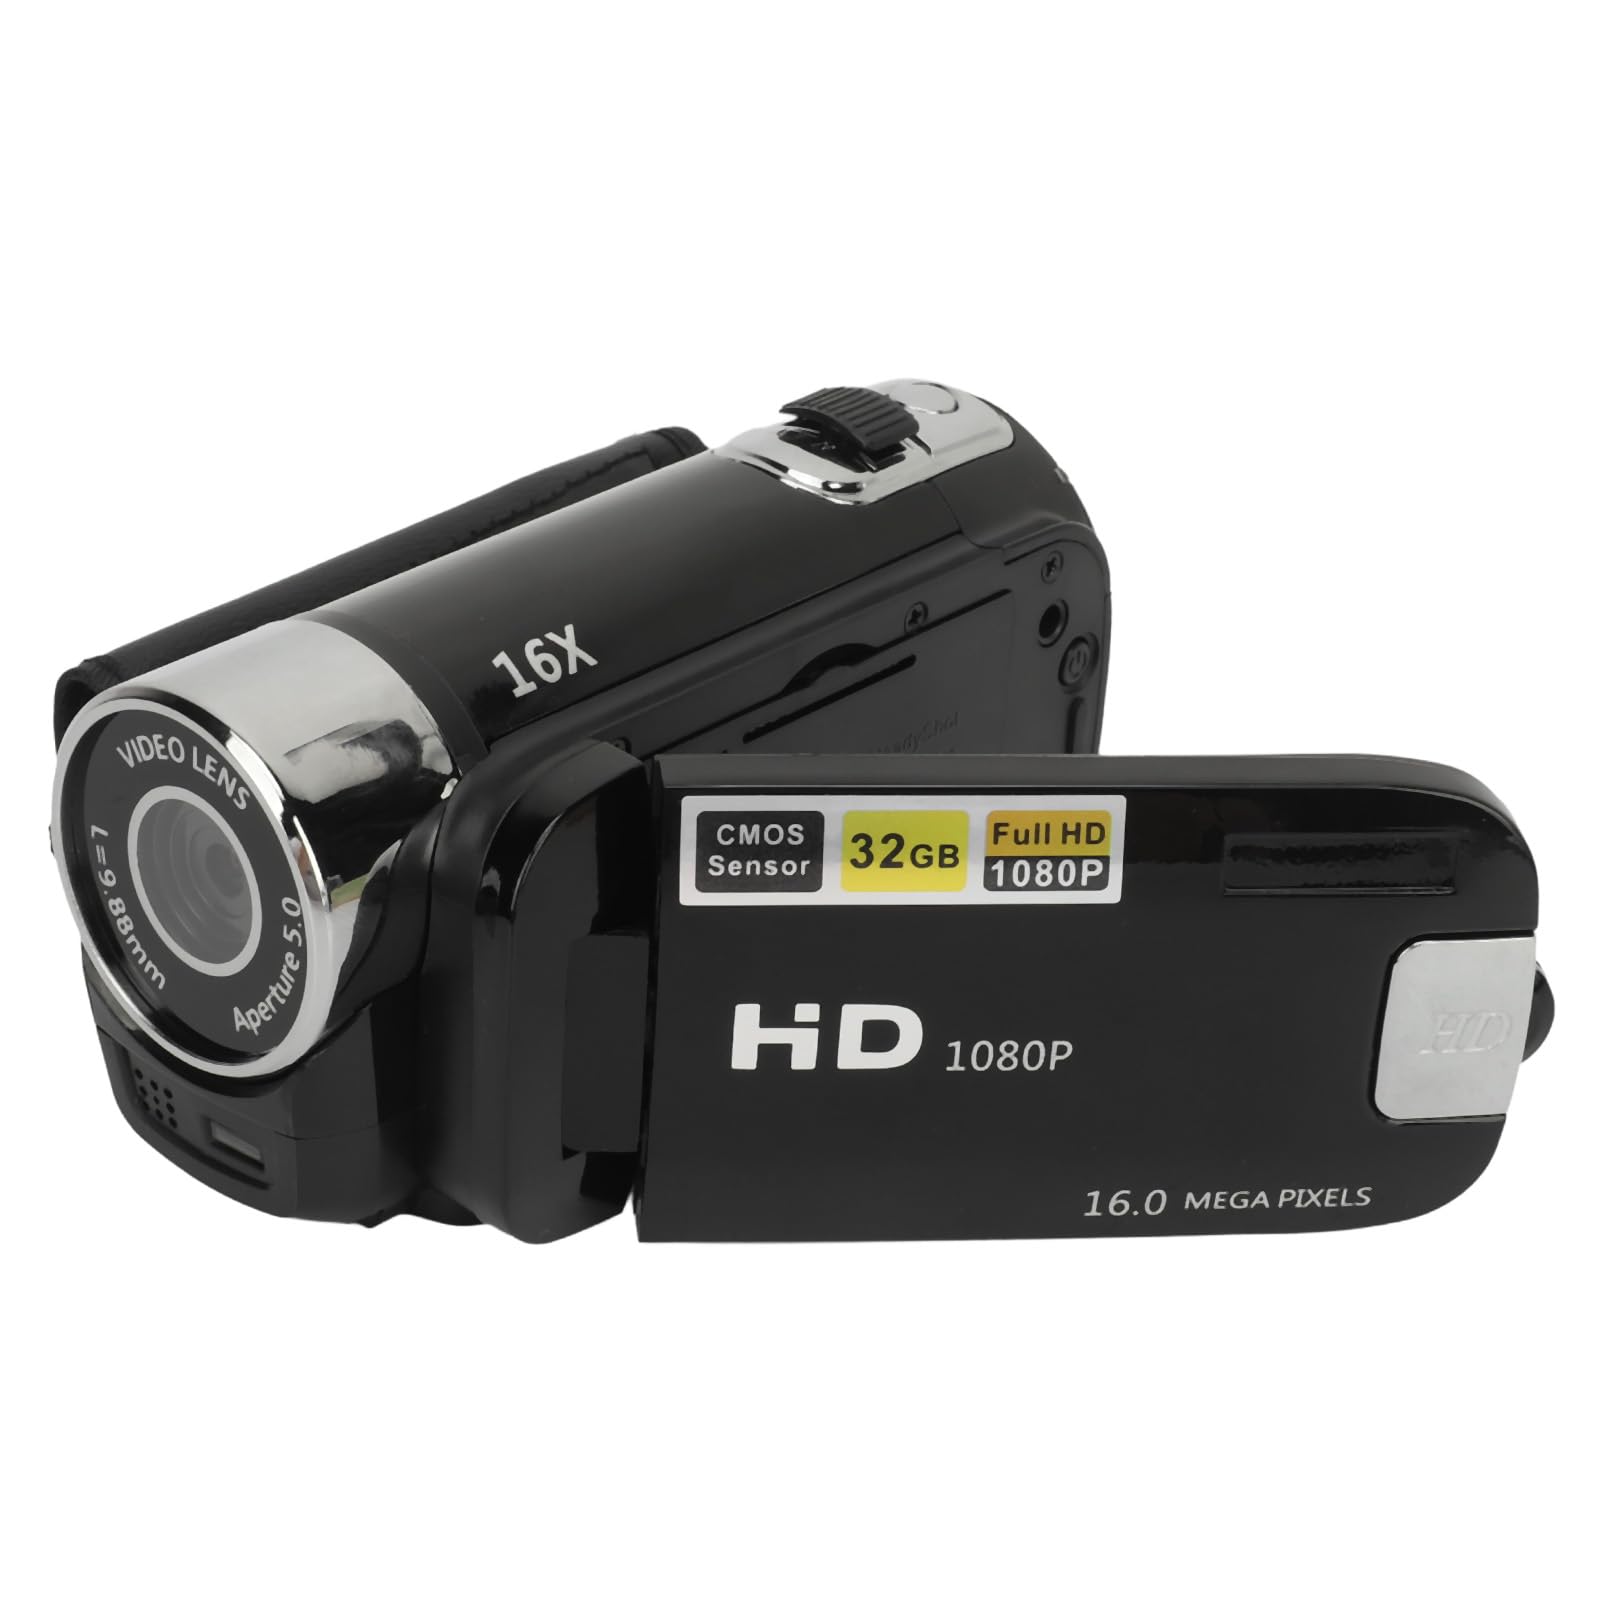 Digitalkamera 1080P, 16 MP, Kompakte Kleine Videokamera mit 16-fachem Digitalzoom, Anti-Shake, Loop-, 2,4 Zoll Drehbarer Bildschirm, Vlogging-Kamera für Teenager, Erwachsene,